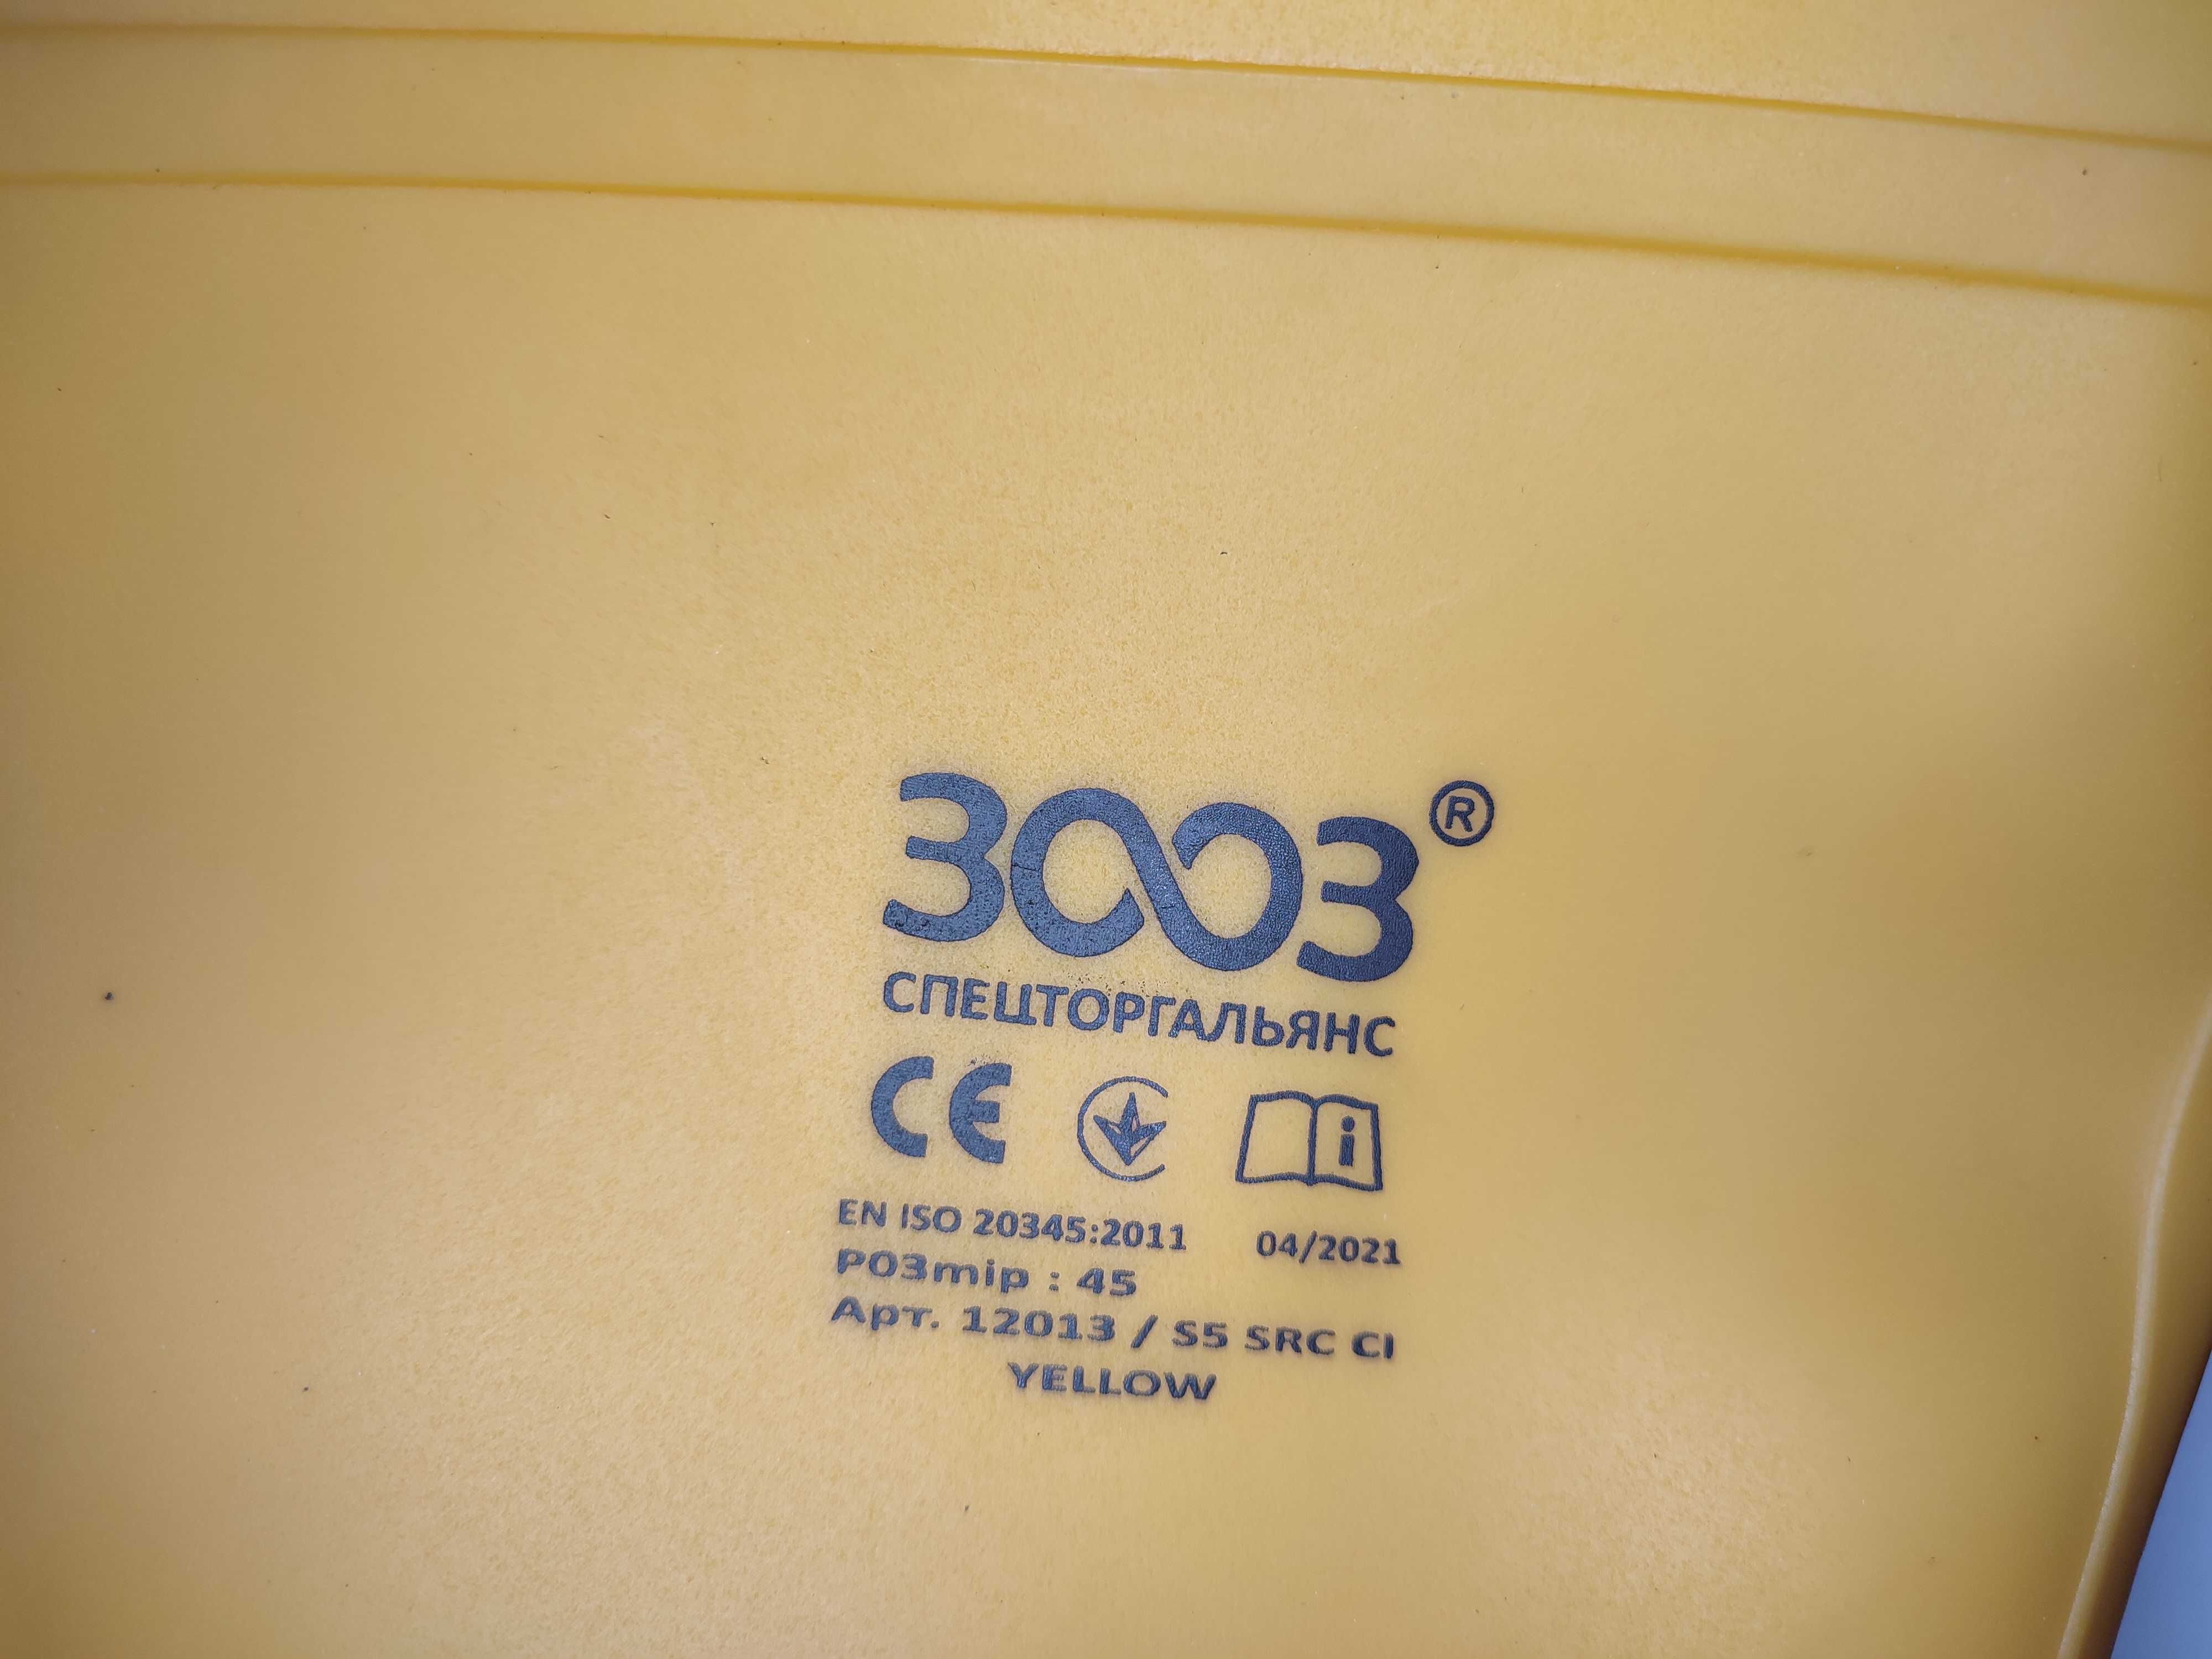 Сапоги 3003 ПВХ S5 SRC CI (12013)